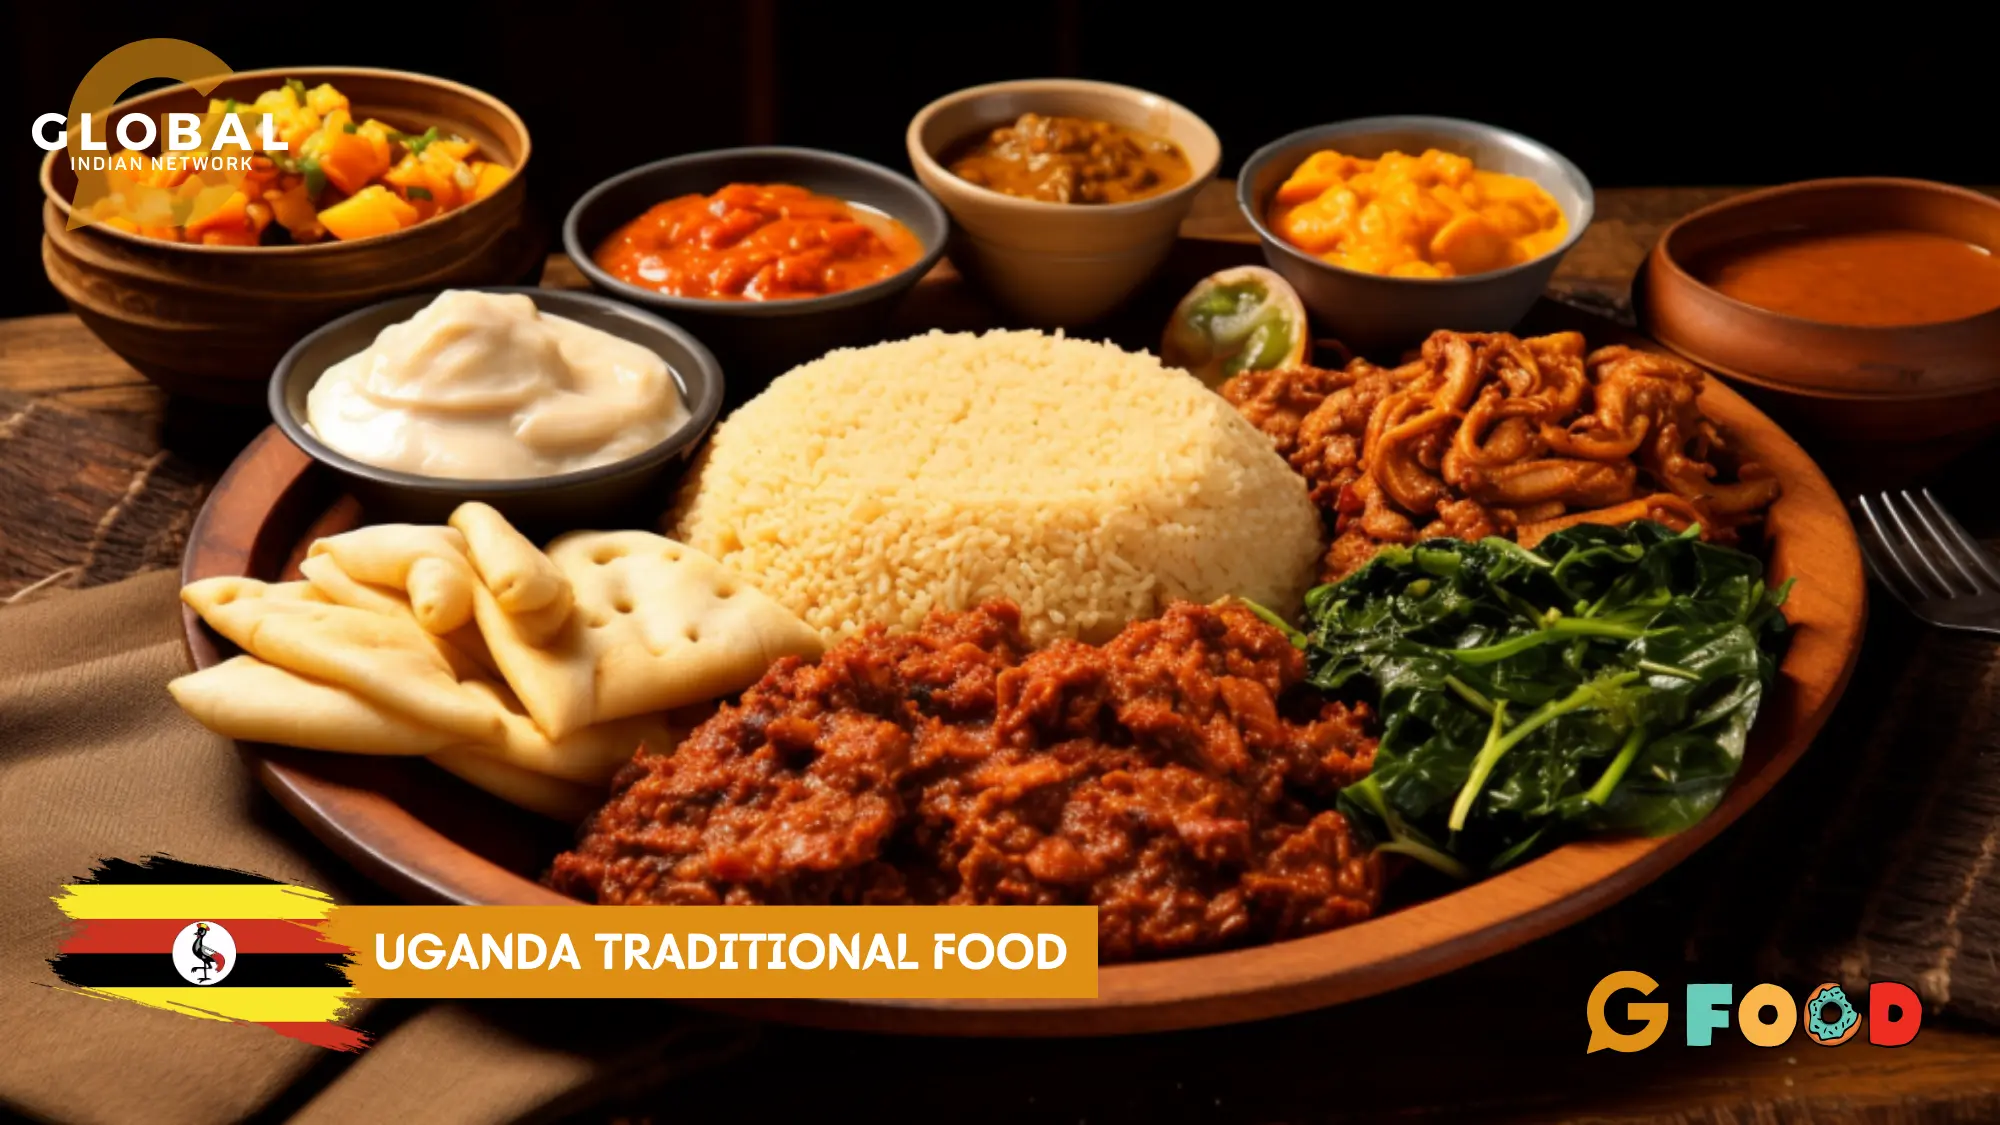 Ugandan traditional food